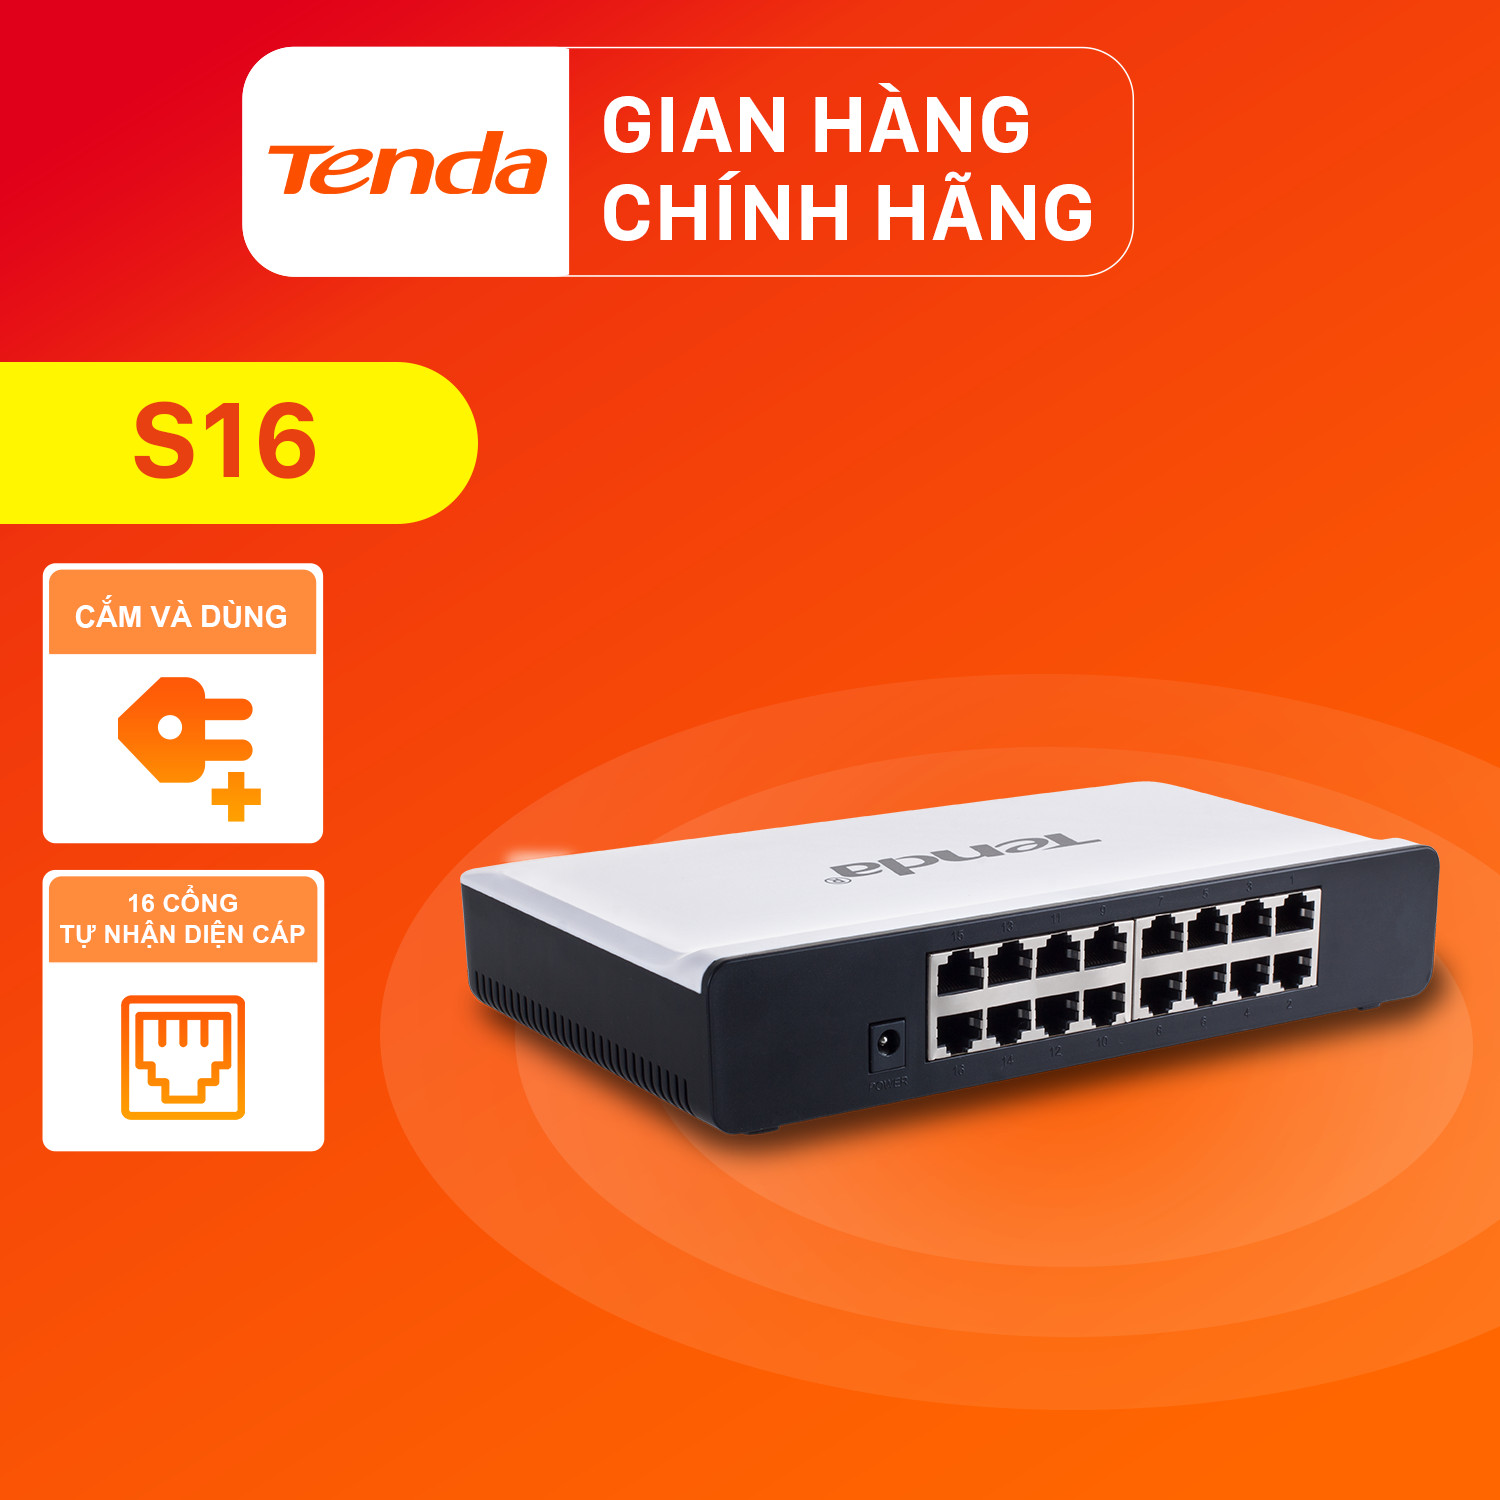 Tenda Bộ chia mạng Switch S16 16 cổng Ethernet 100Mbps - Hàng Chính Hãng